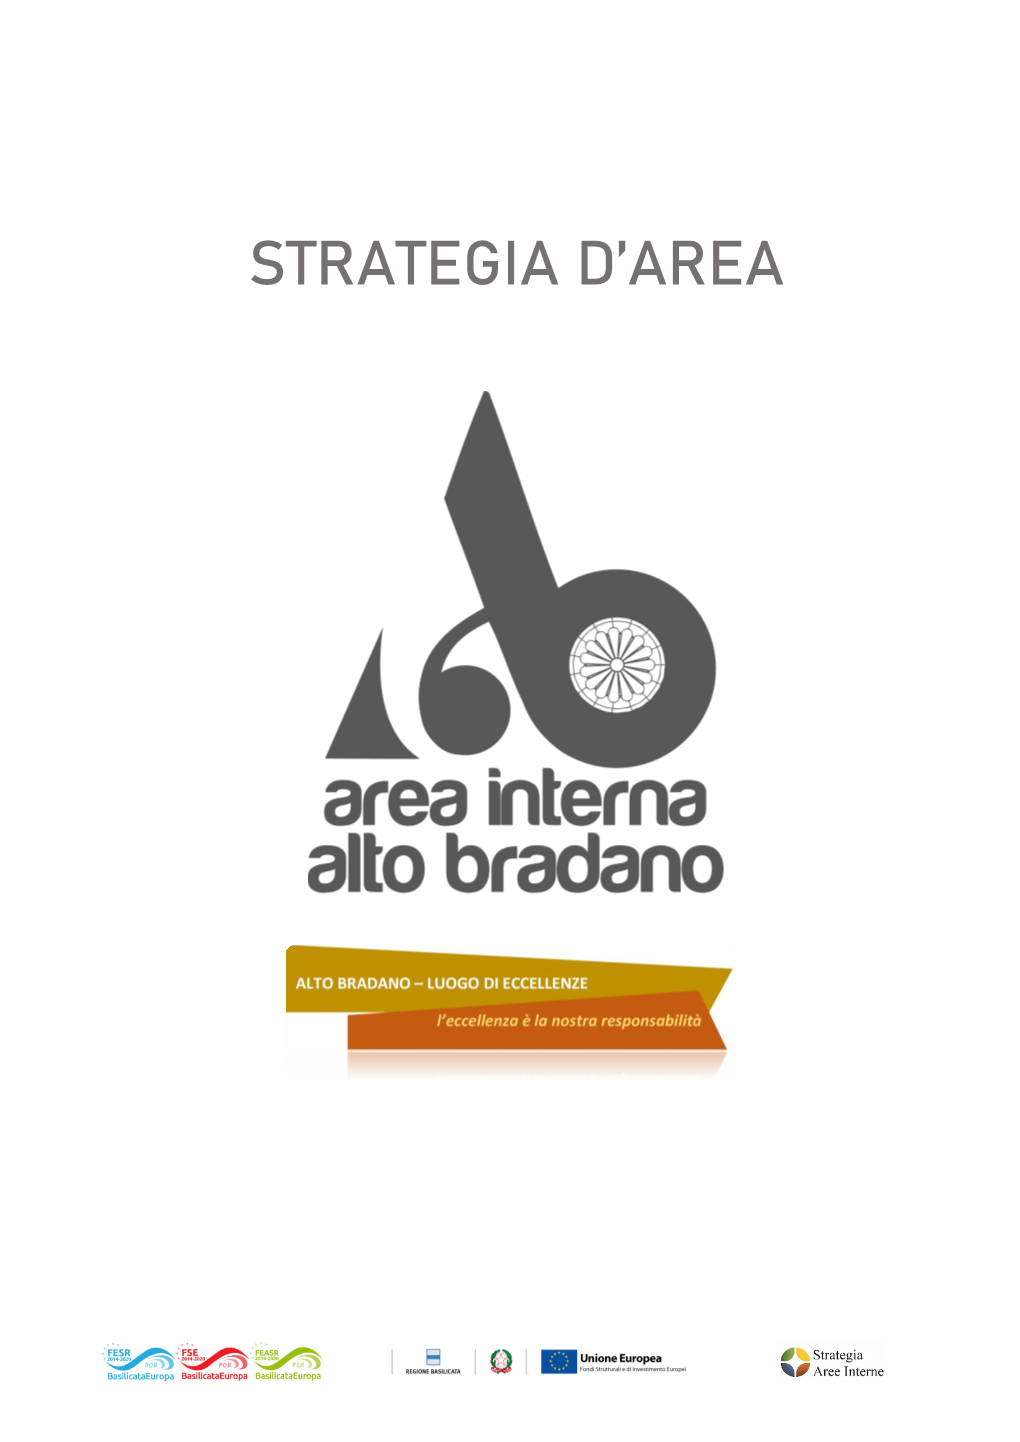 Strategia D'area